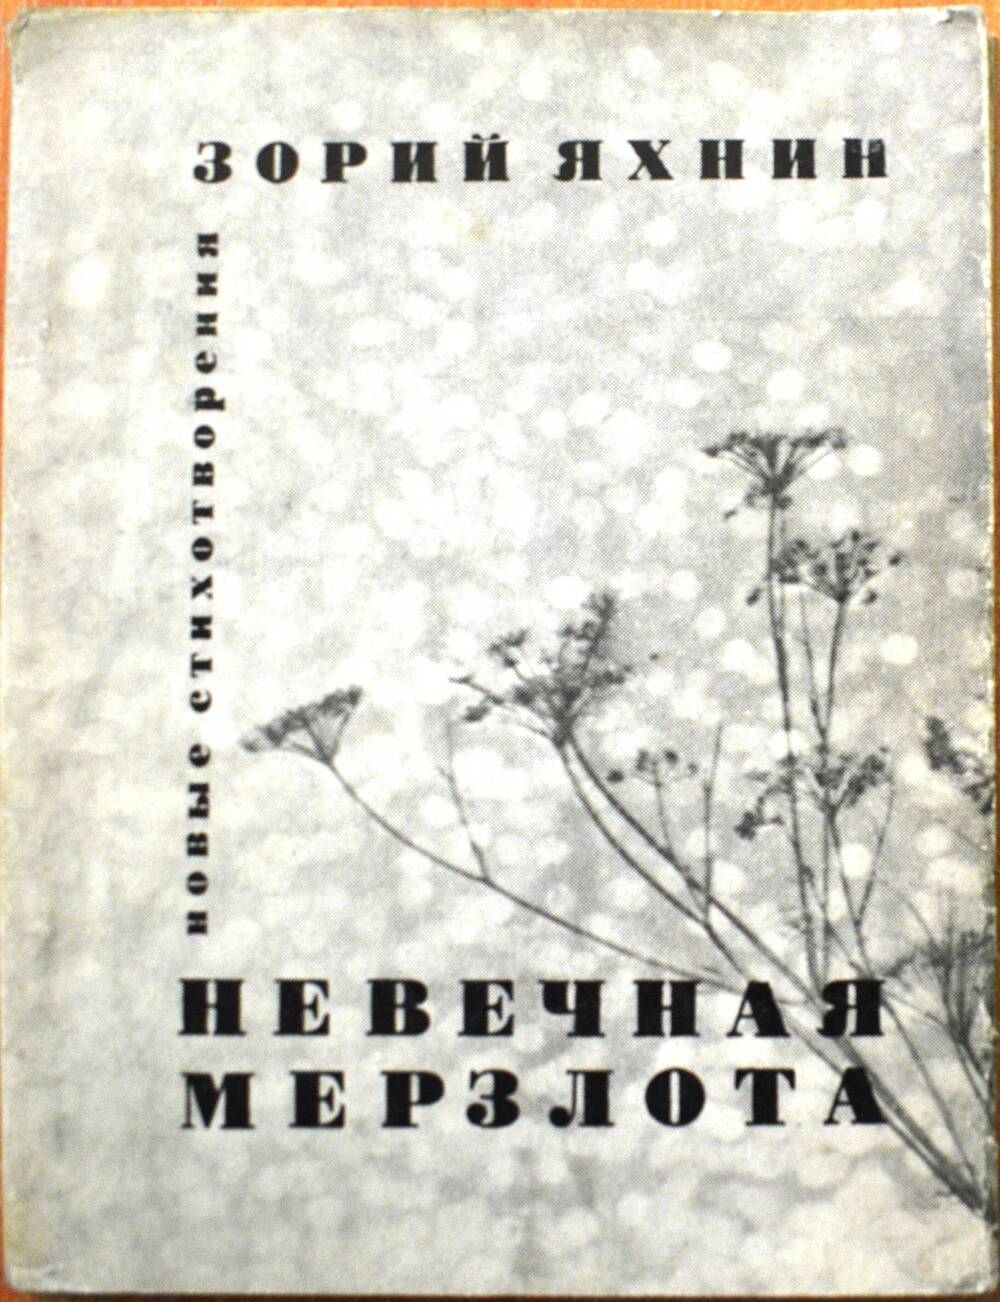 Сборник стихов «Невечная мерзлота» автор Зорий Яхнин